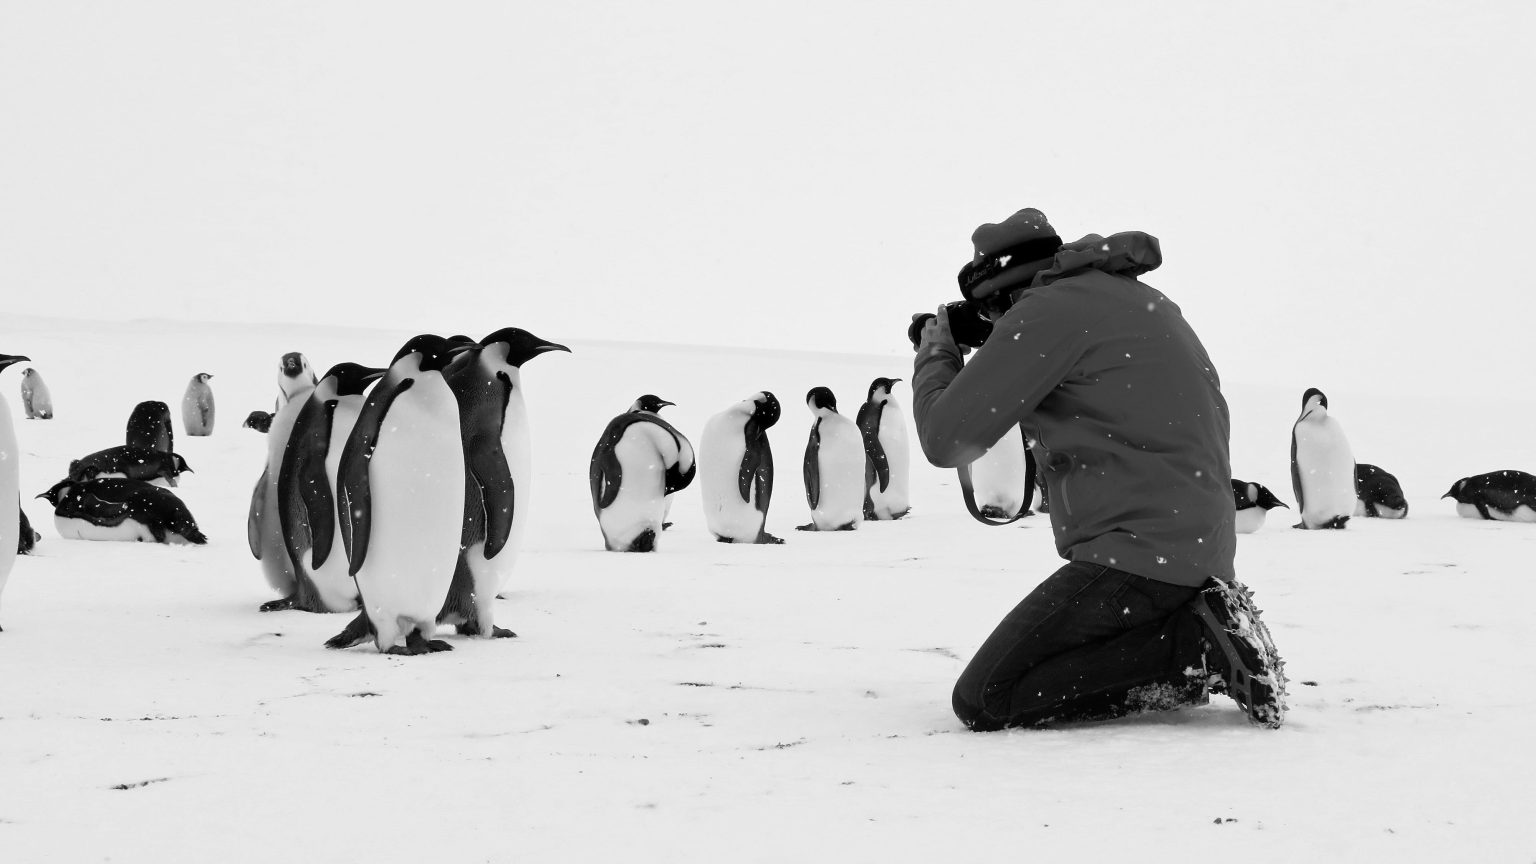 VOYAGE-AU-POLE-SUD_Les manchots Empereur prennent la pose ©Cédric Gentil_Expédition Wild-Touch Antarctica!-500Ko-2